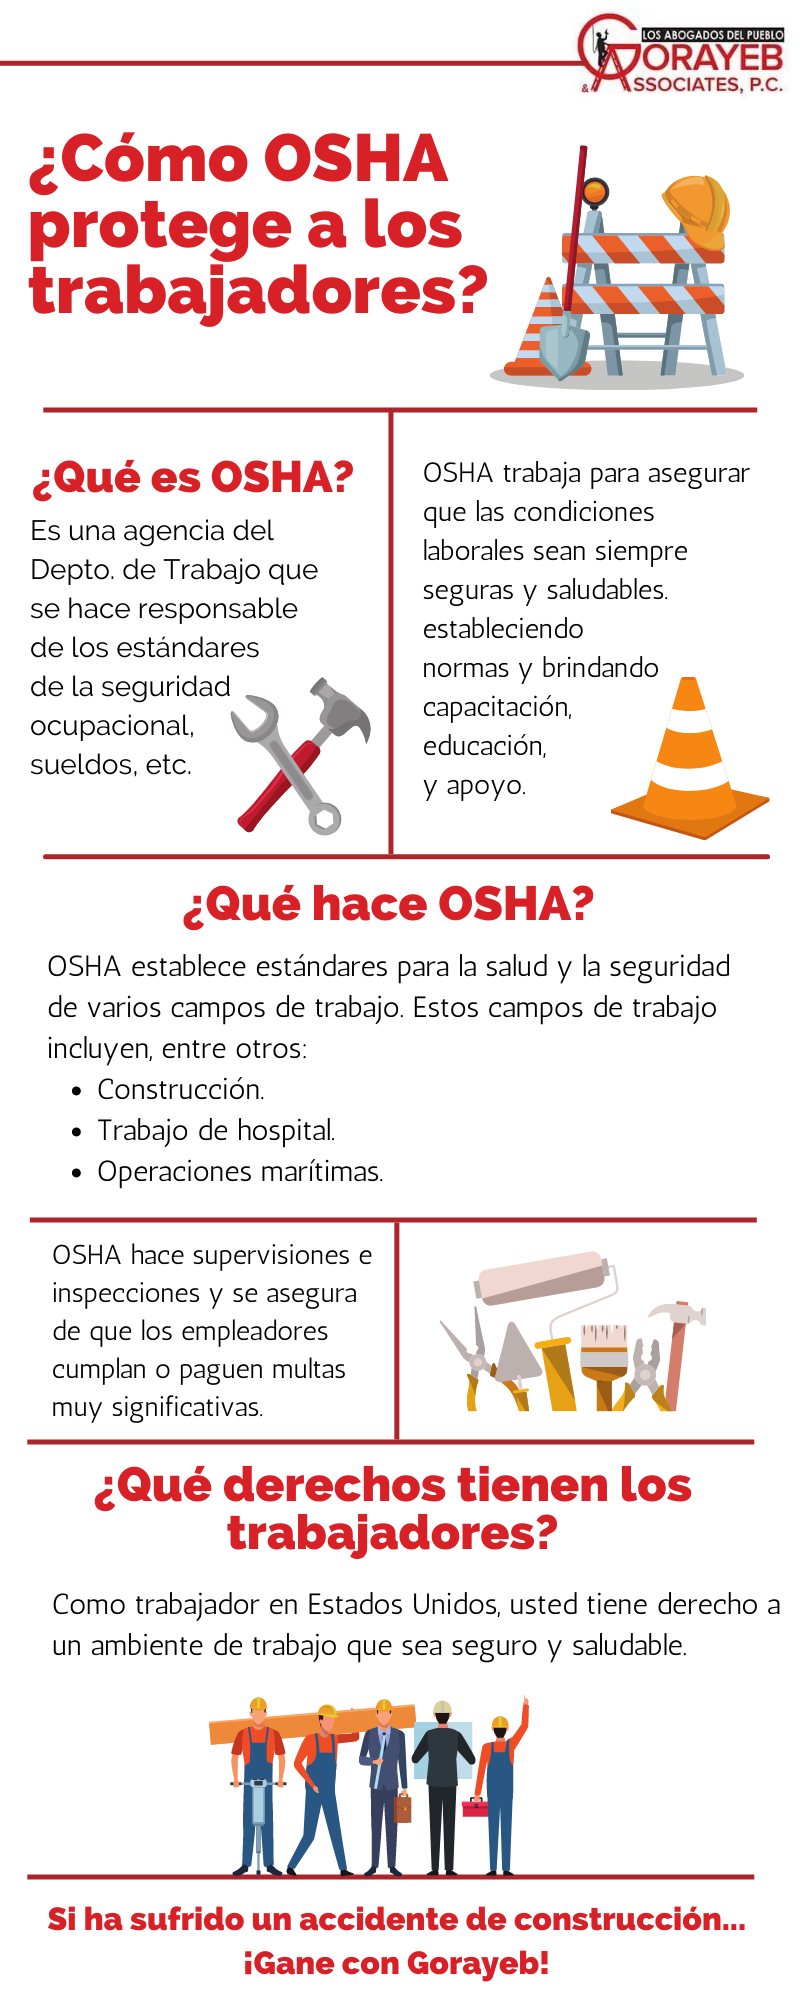 ¿Cómo protege OSHA a los trabajadores?